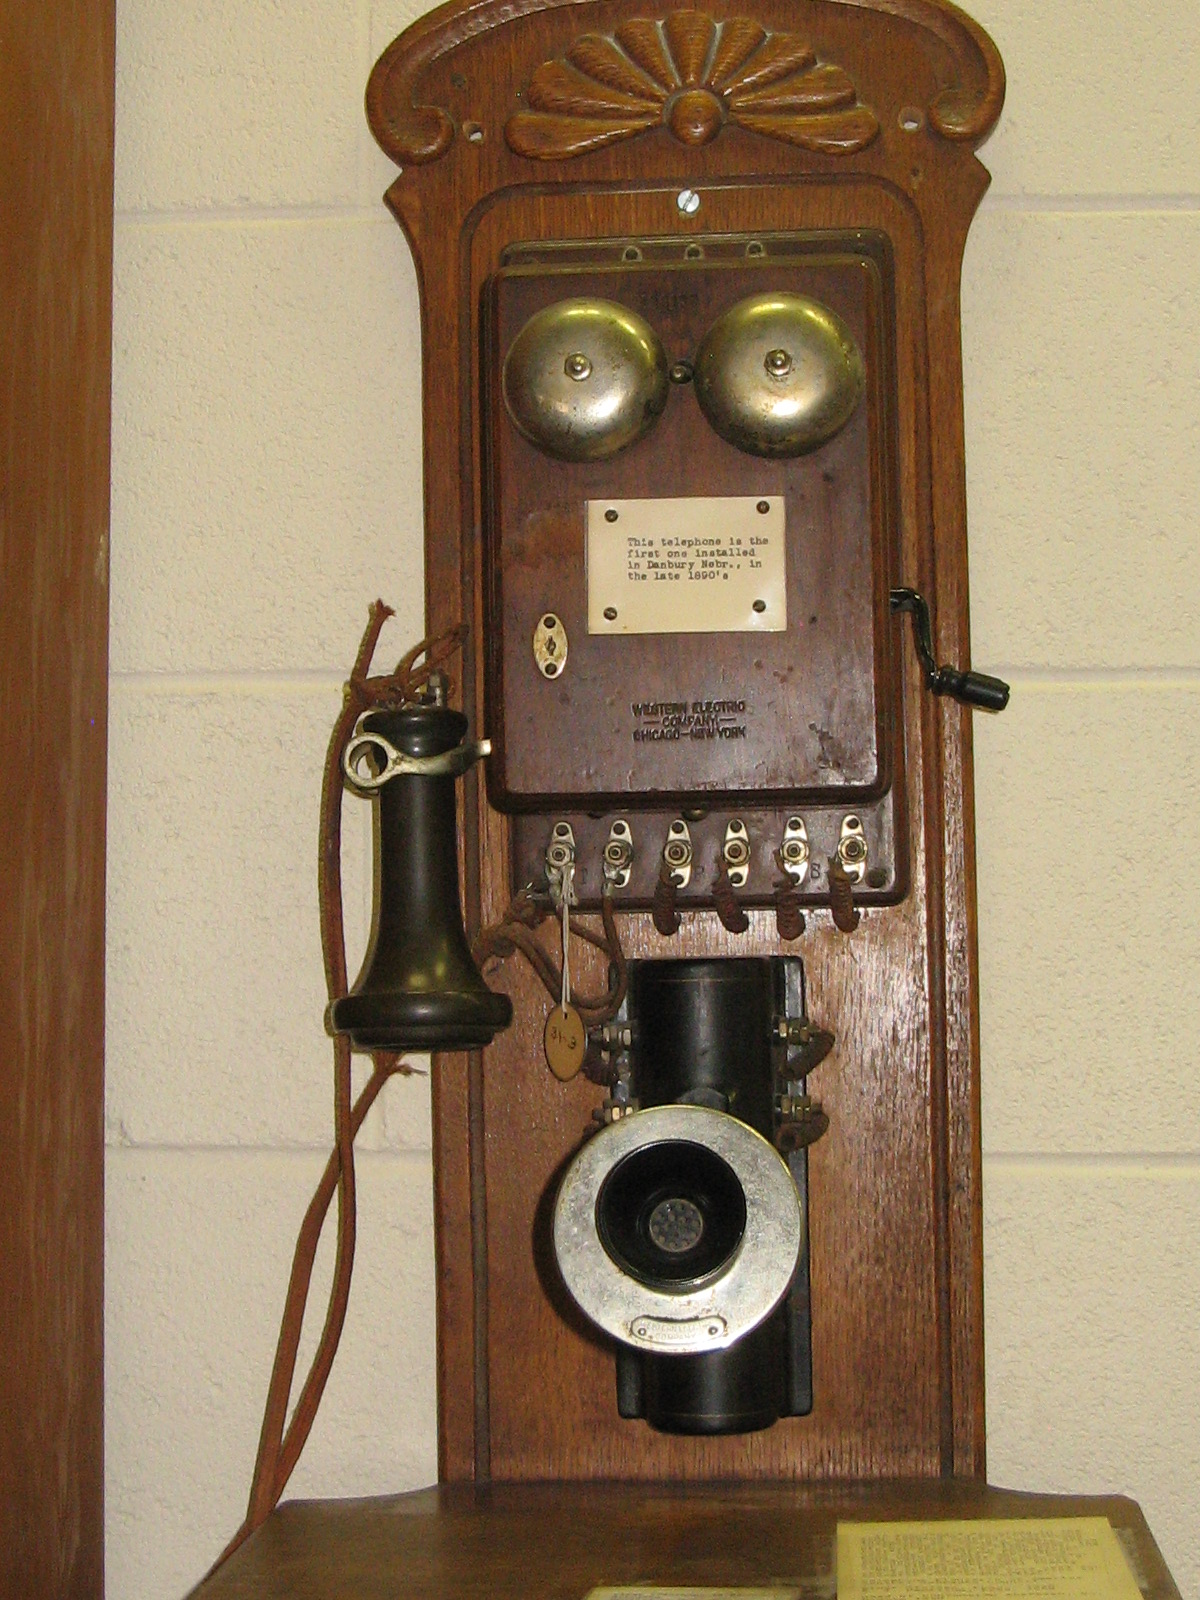 Mirs телефон. Первый телефонный аппарат. Первый телефон. Самый первый телефонный аппарат в мире.